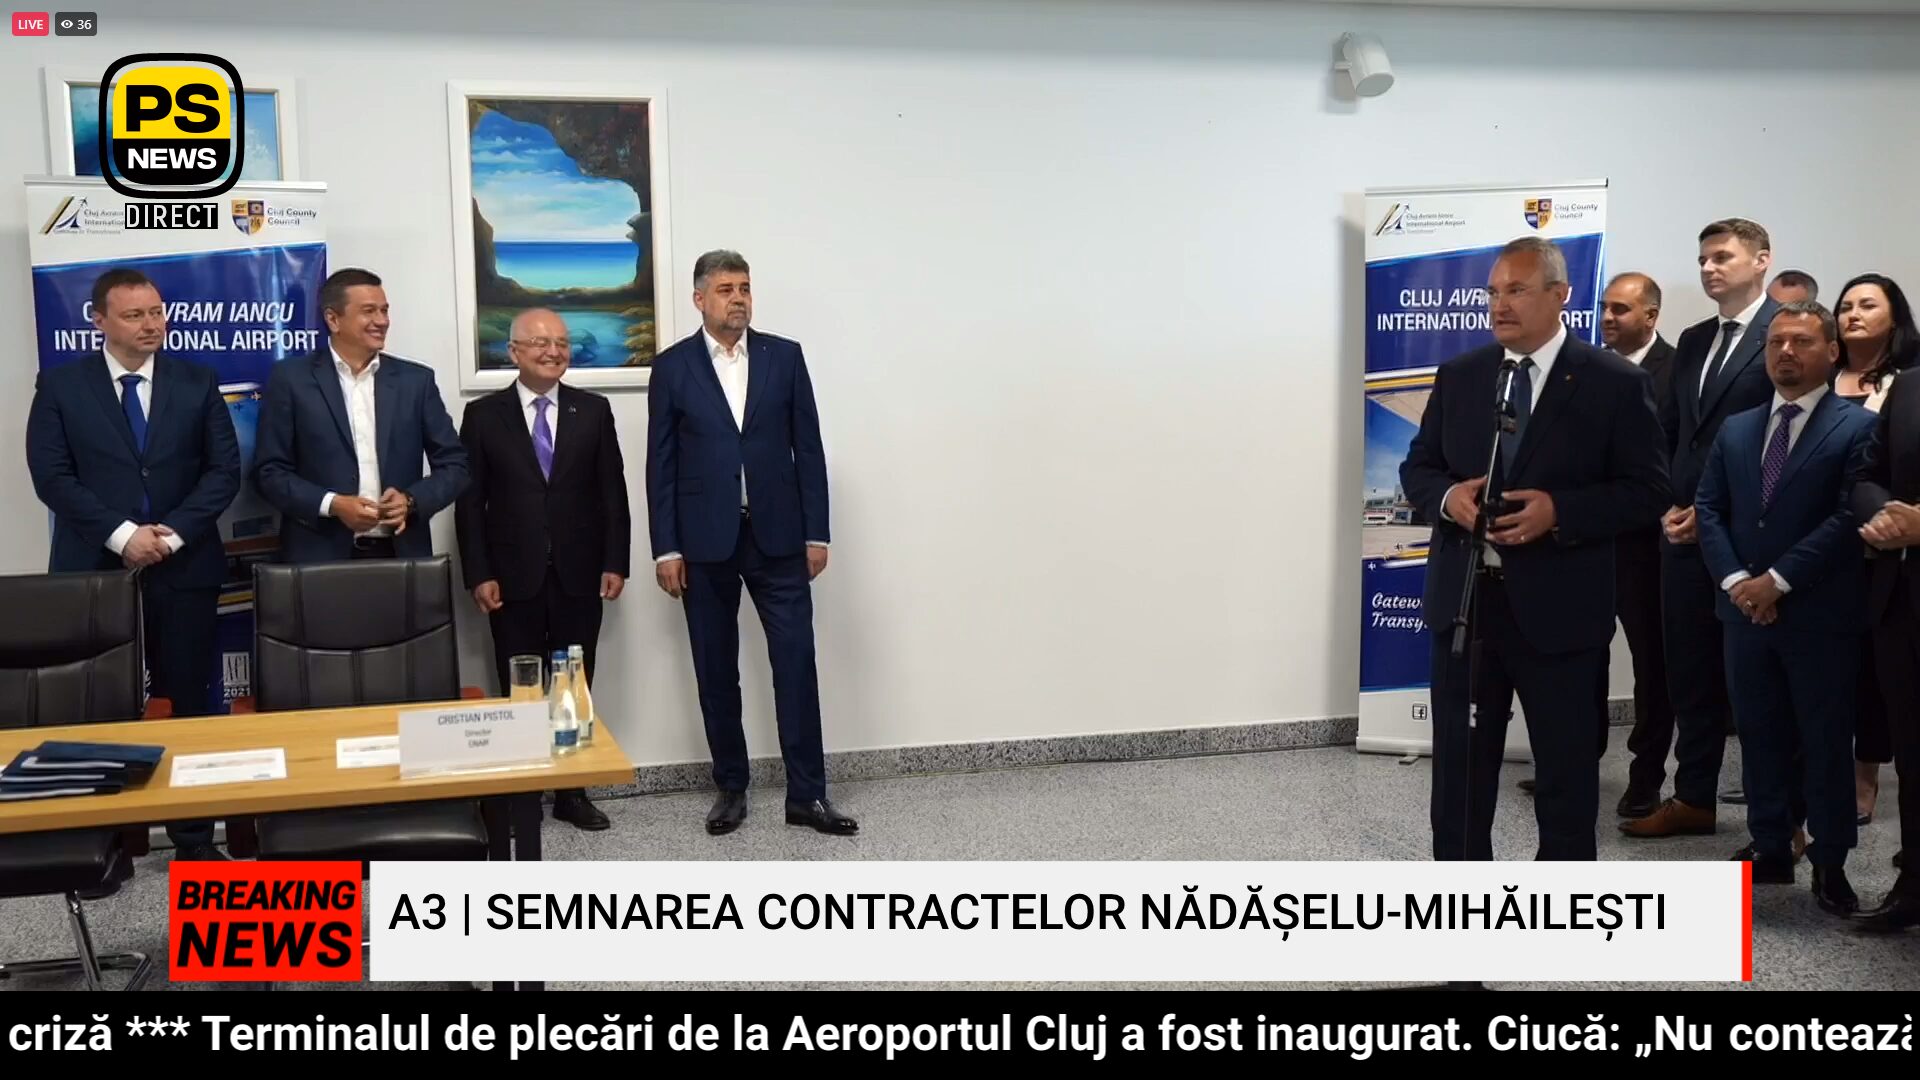 PS News TV | Autostrada A3: Semnarea contractelor în prezența premierului Ciolacu